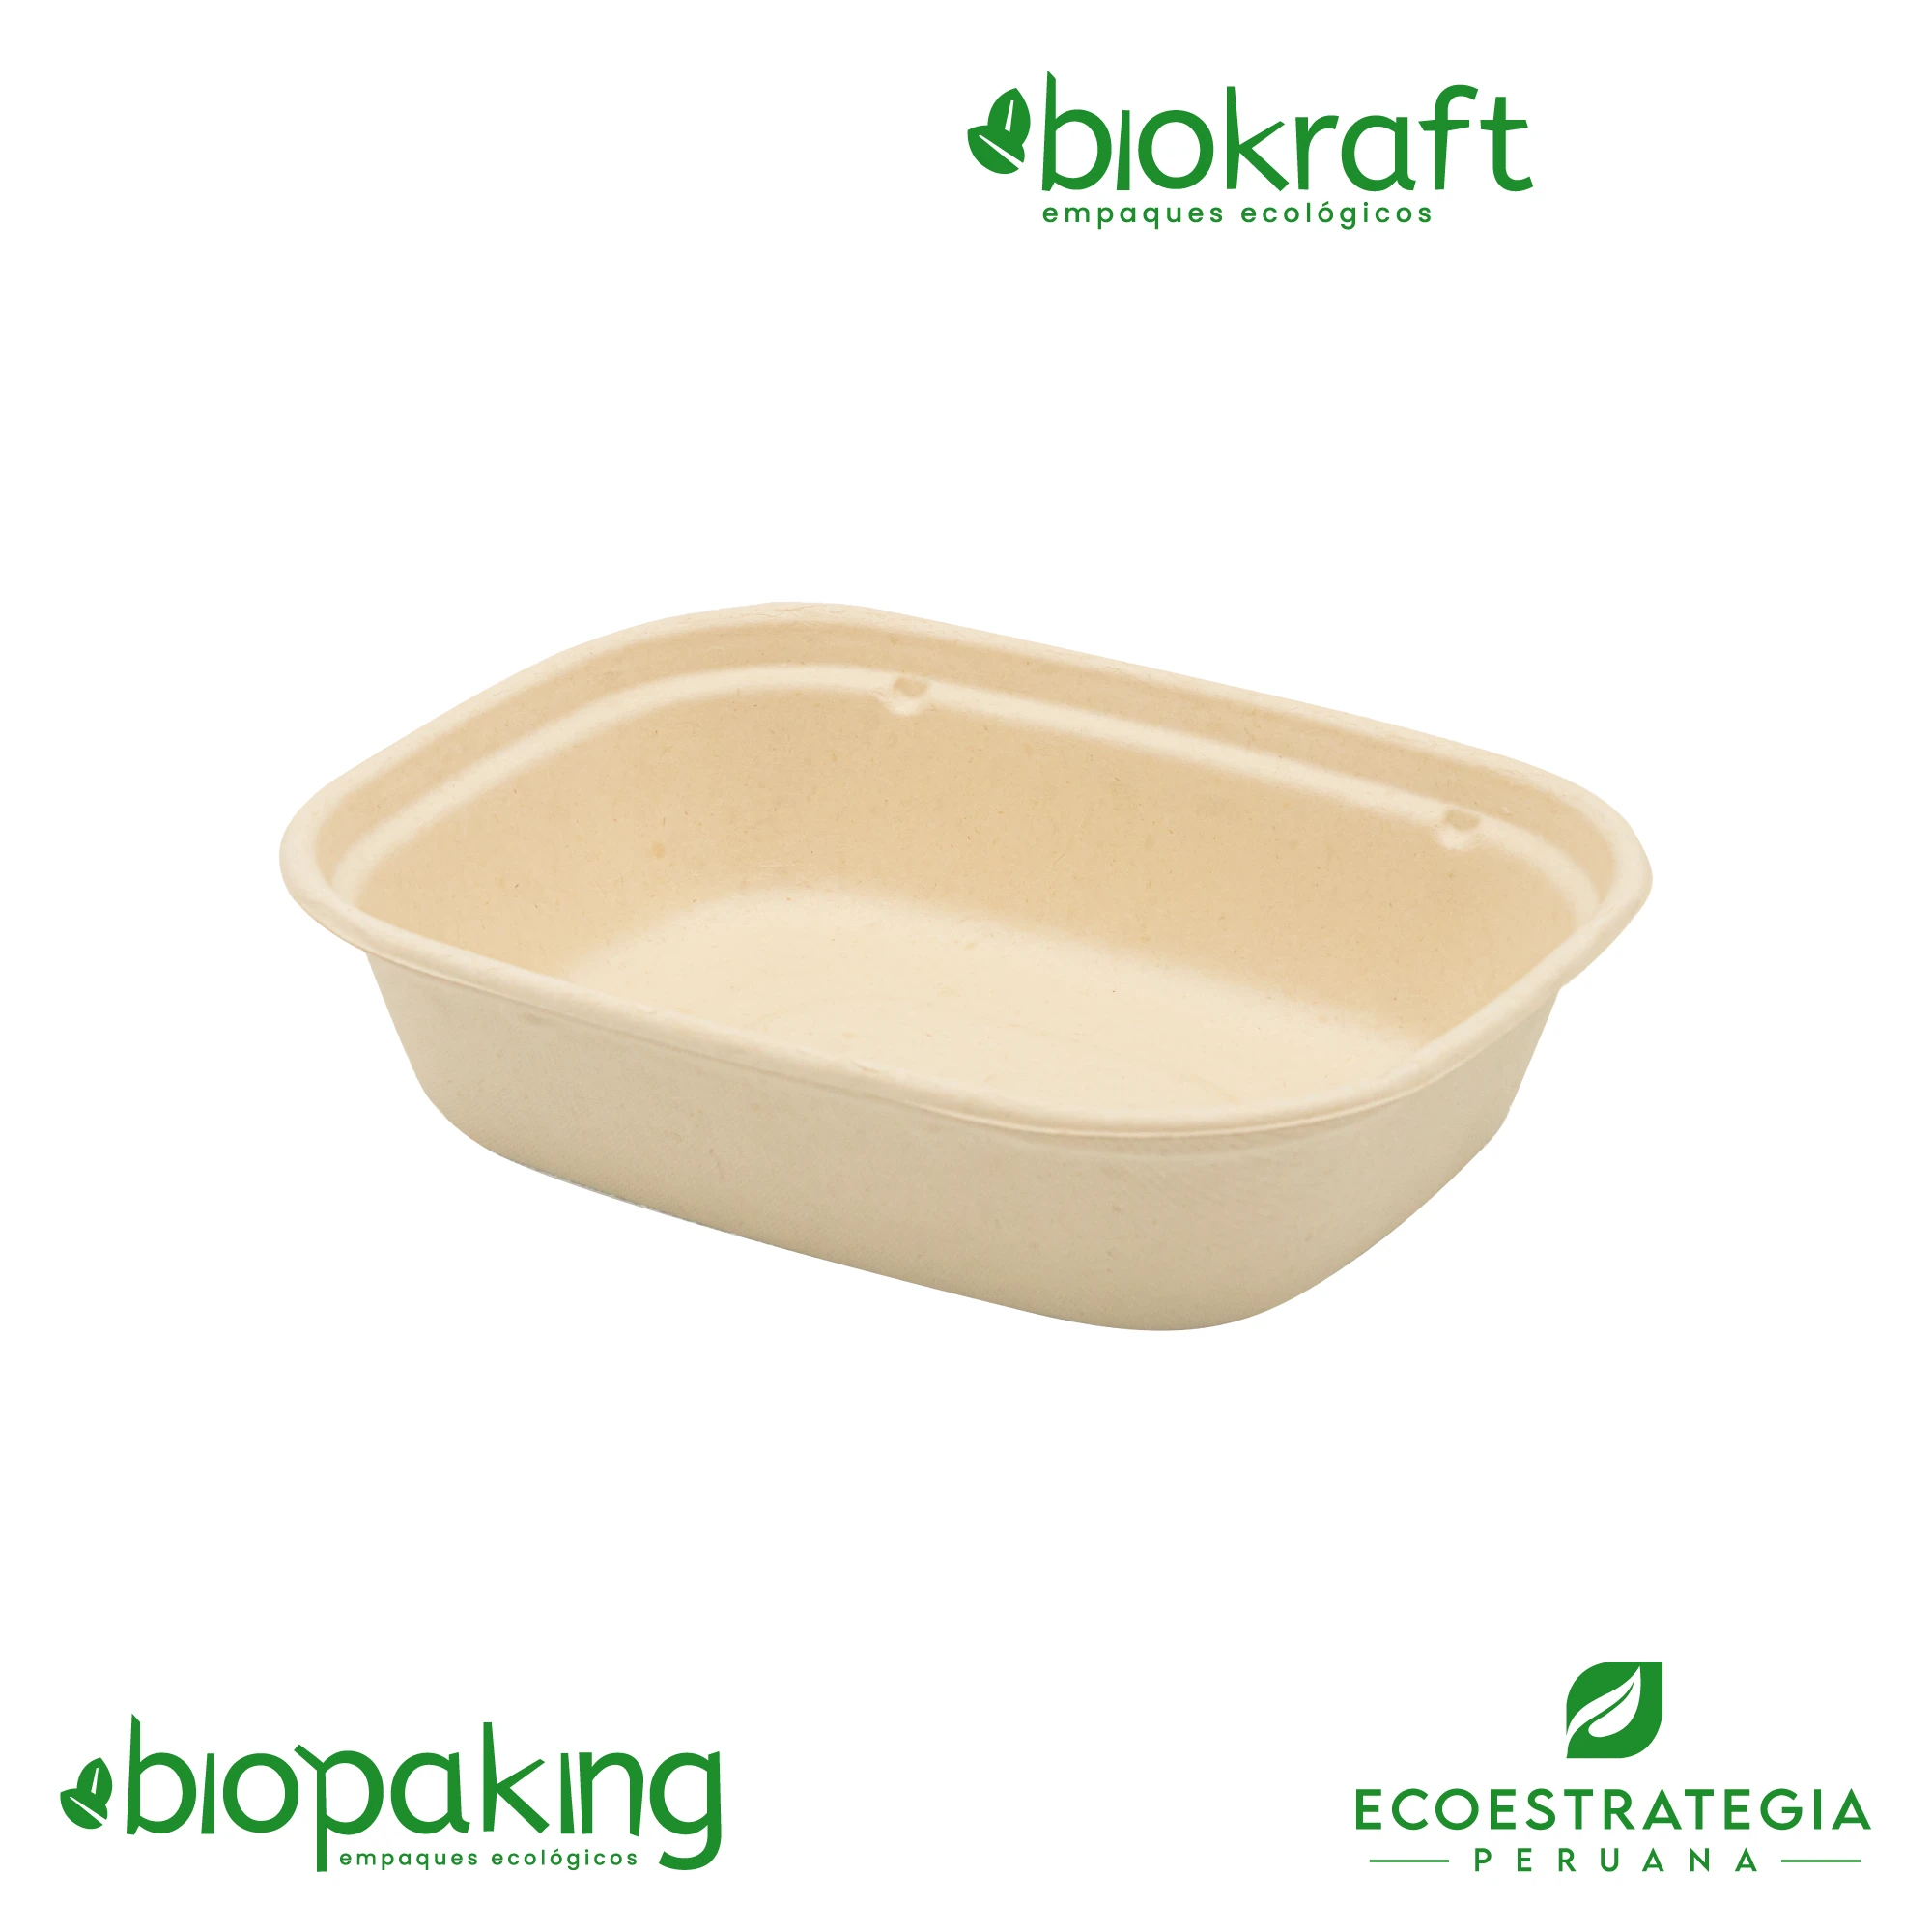 Esta bandeja biodegradable de 1000 ml es a base de fibra de trigo. Envases descartables con gramaje ideal, cotiza tus empaques, platos y tapers ecológicos